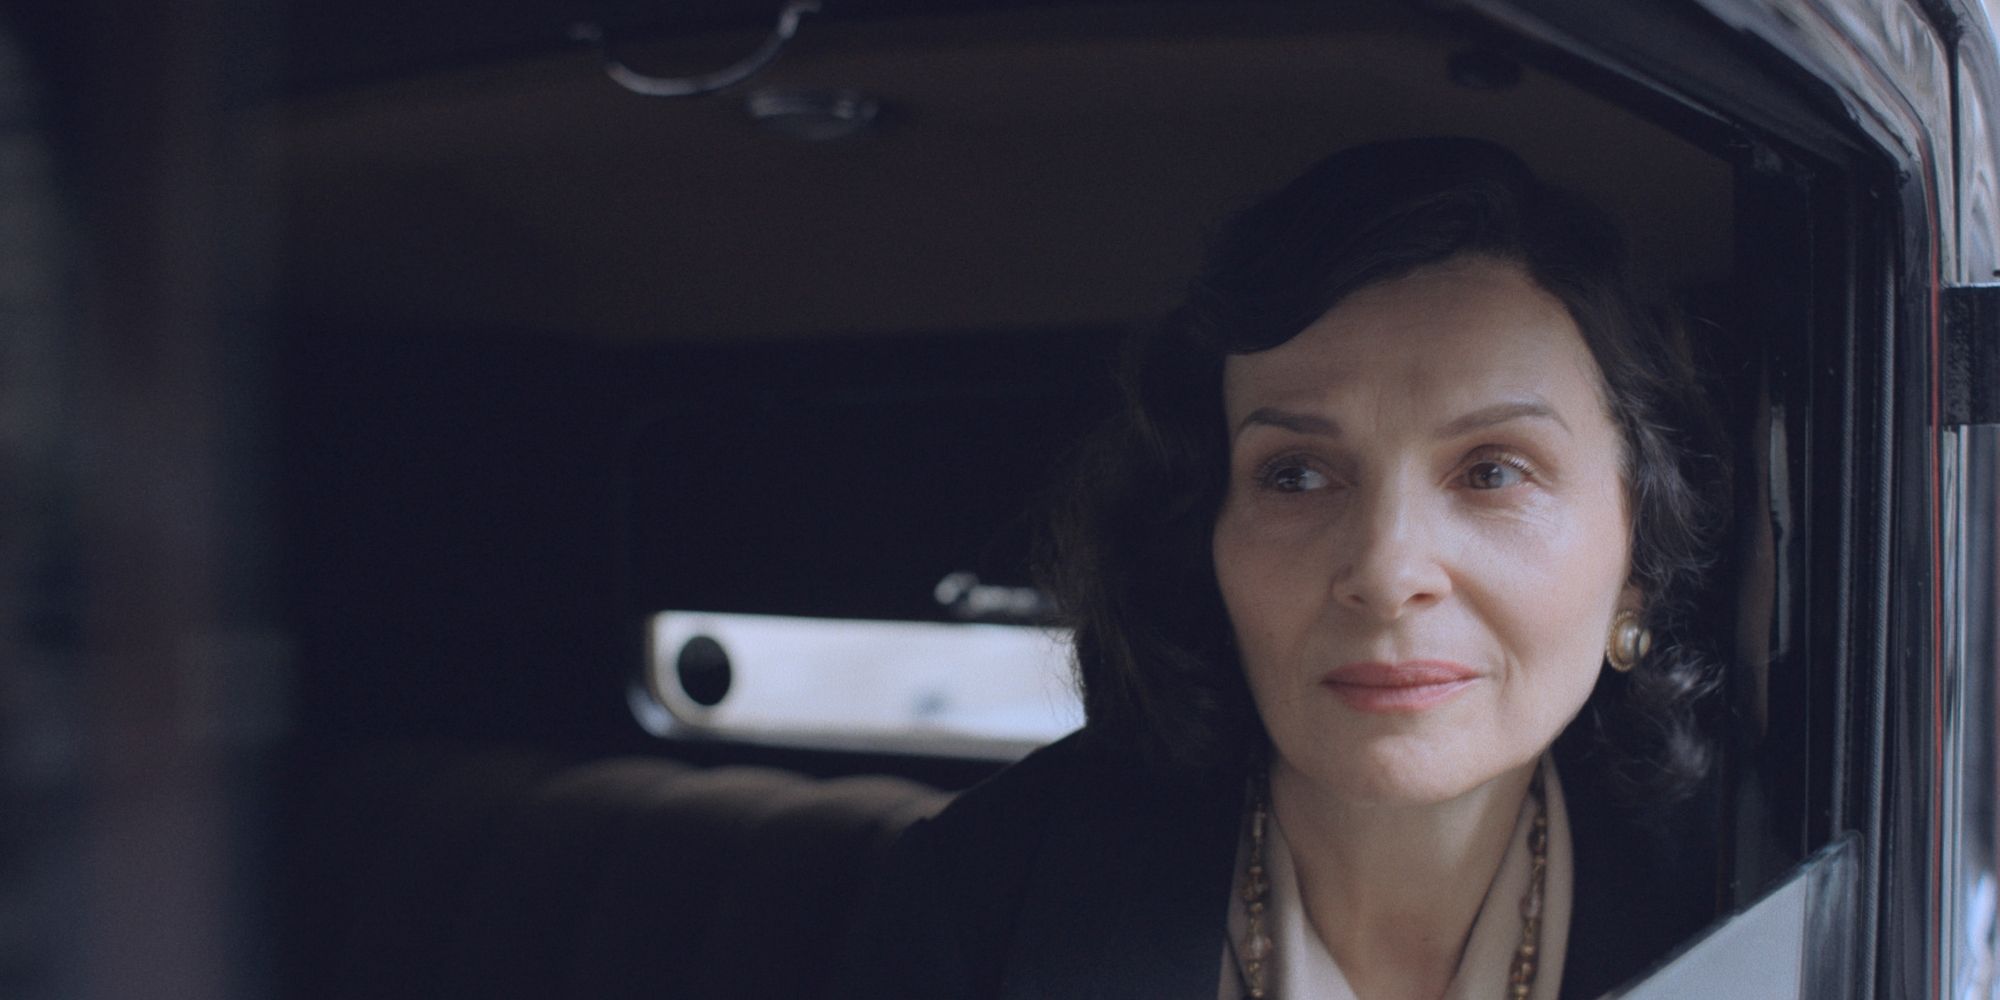 Juliette Binoche As Coco Chanel Looking Out Car Window In The New Look.jpg